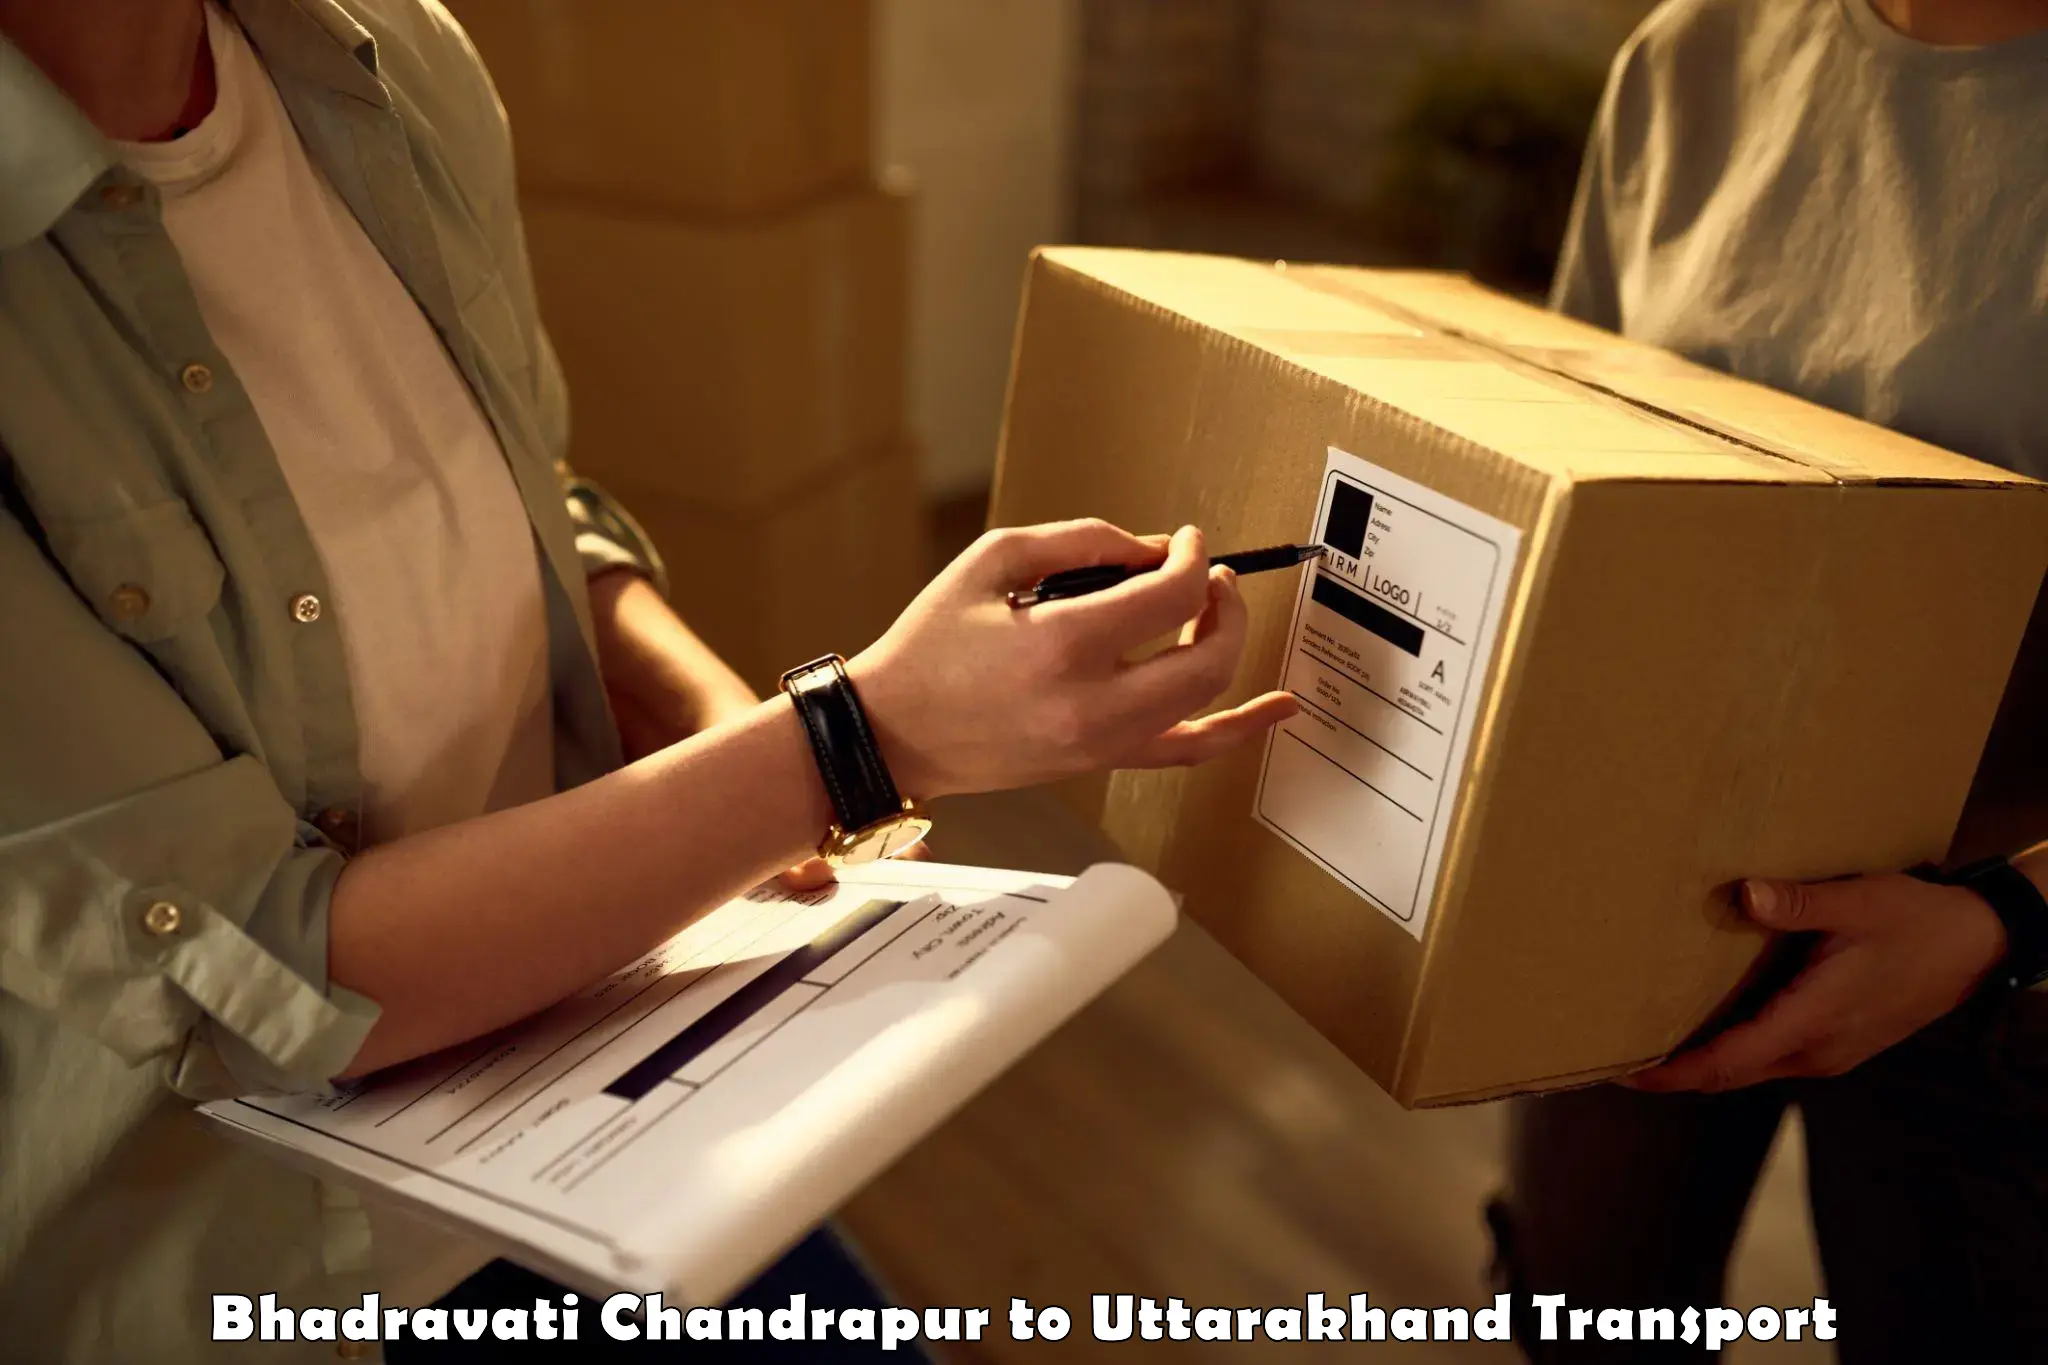 Container transport service Bhadravati Chandrapur to Rudrapur